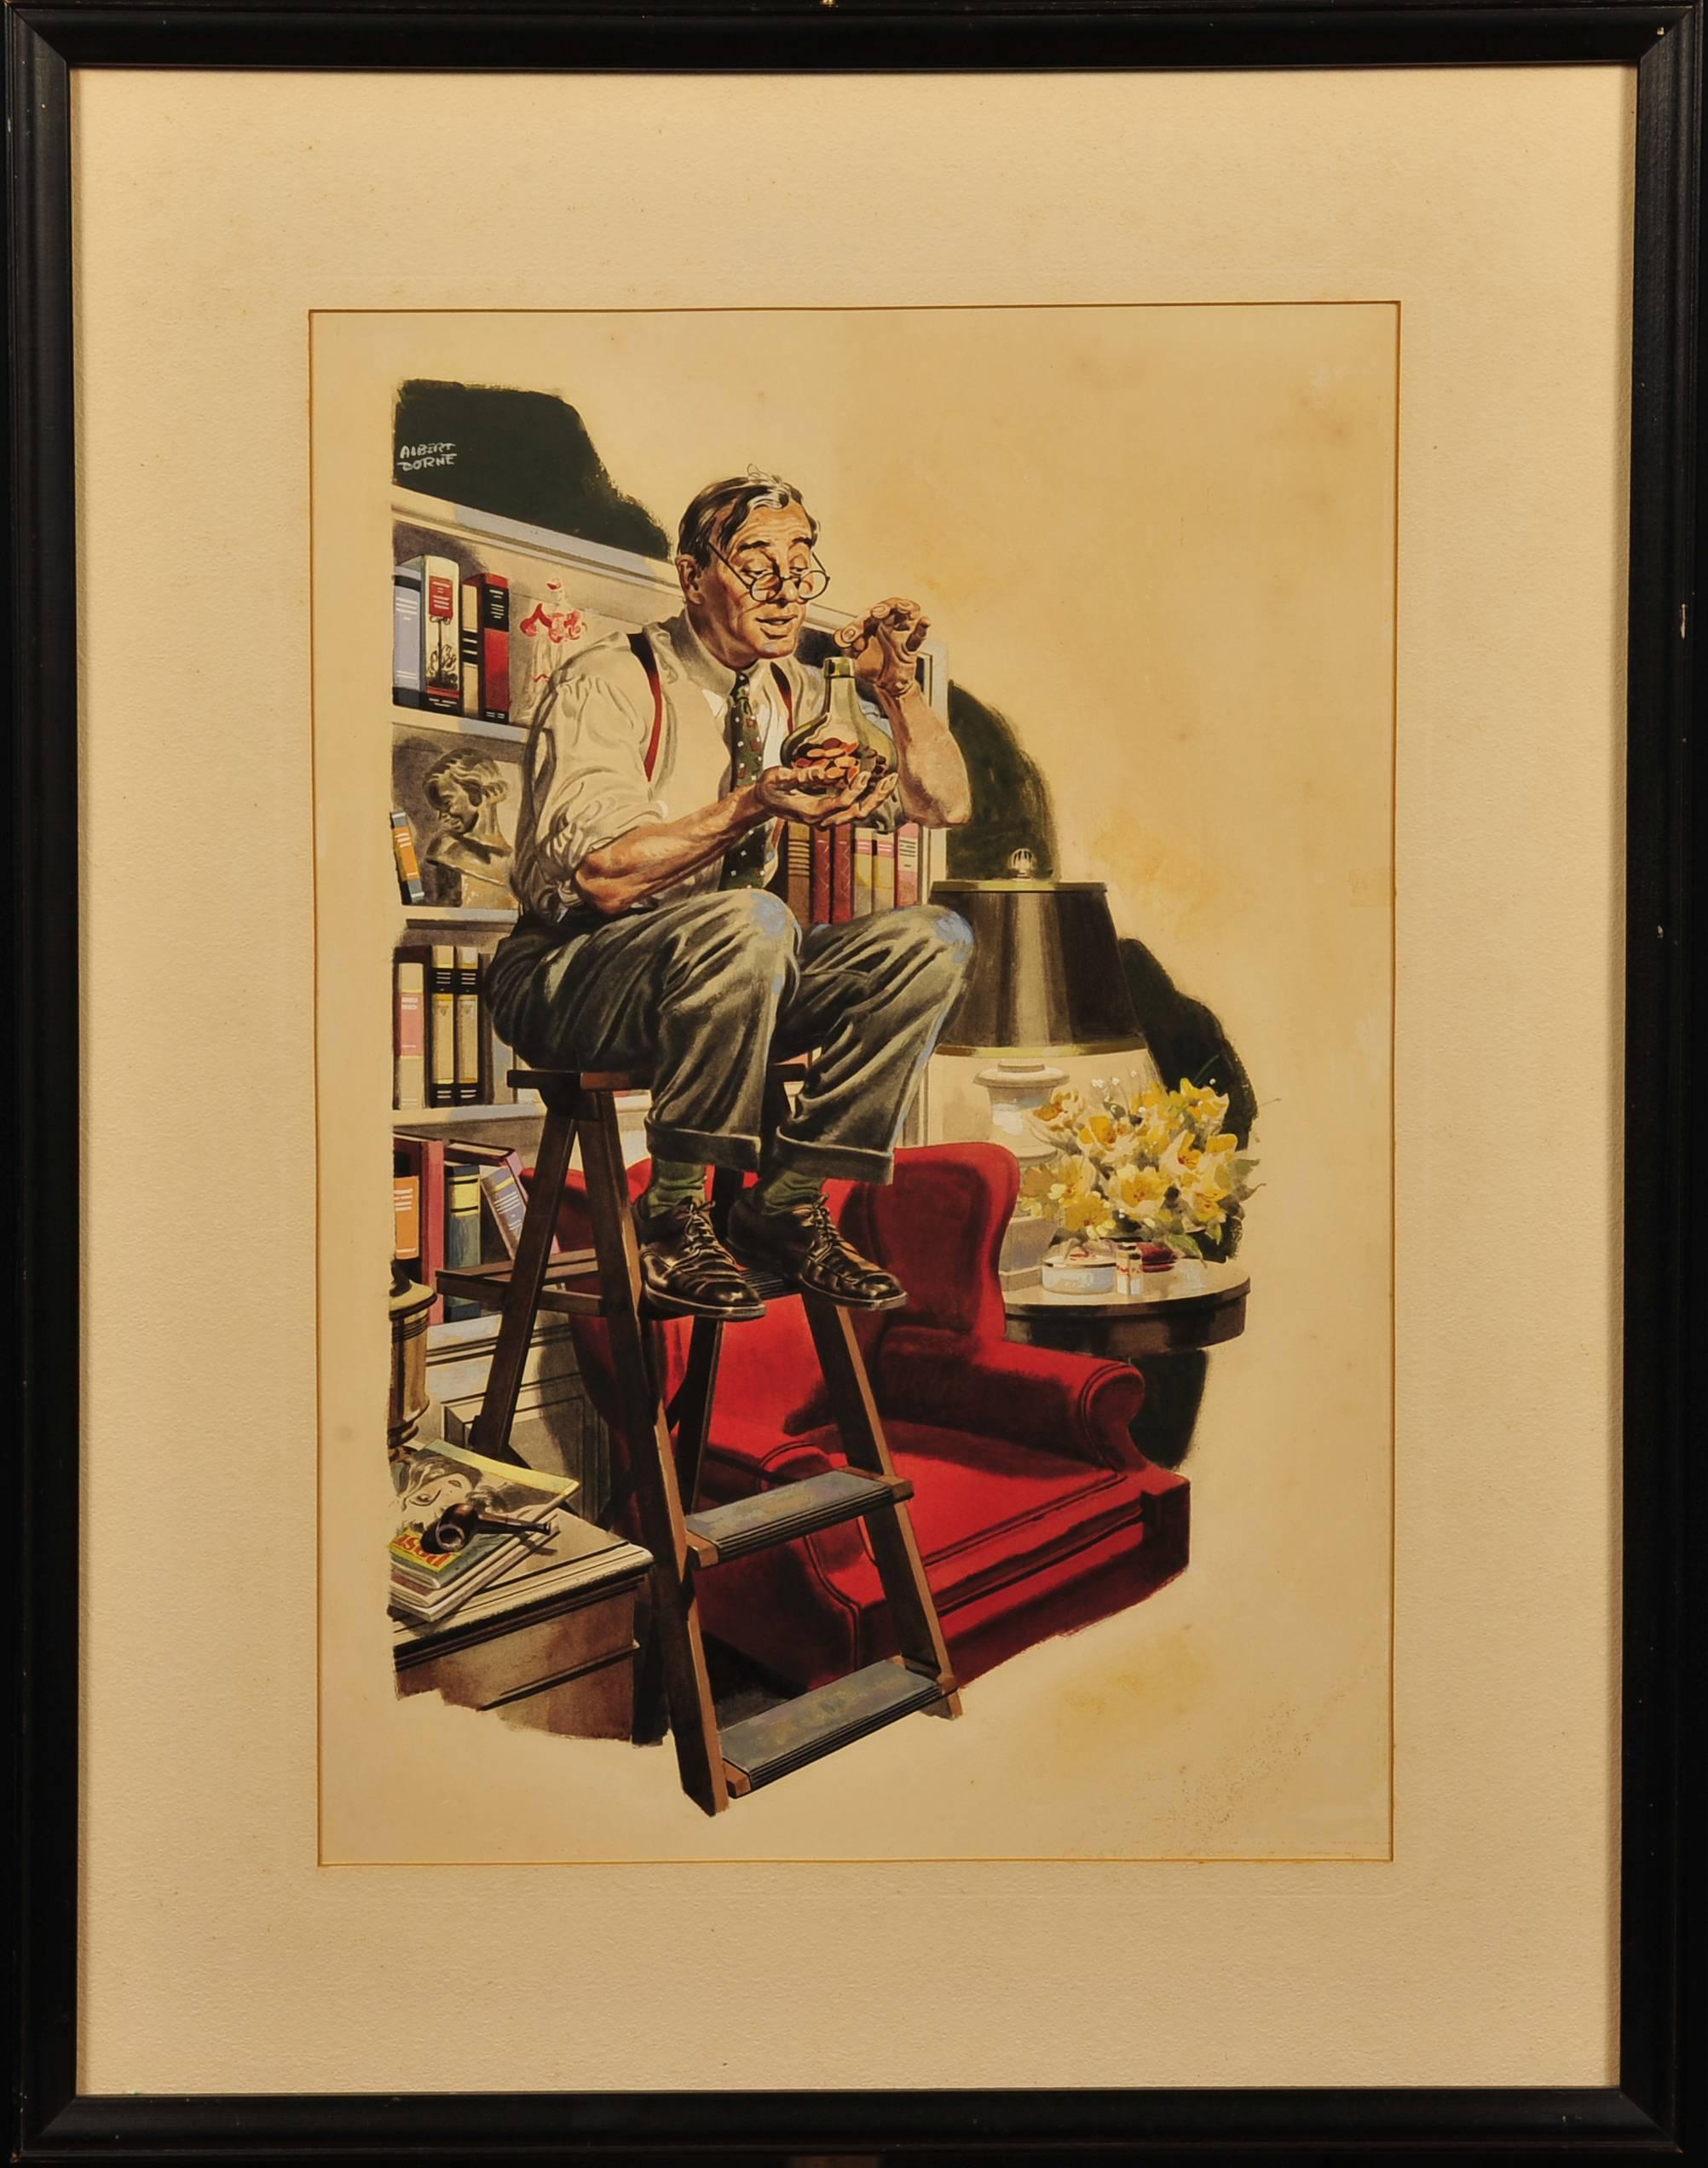 Der Mann auf der Leiter in der Bibliothek – Painting von Albert L. Dorne